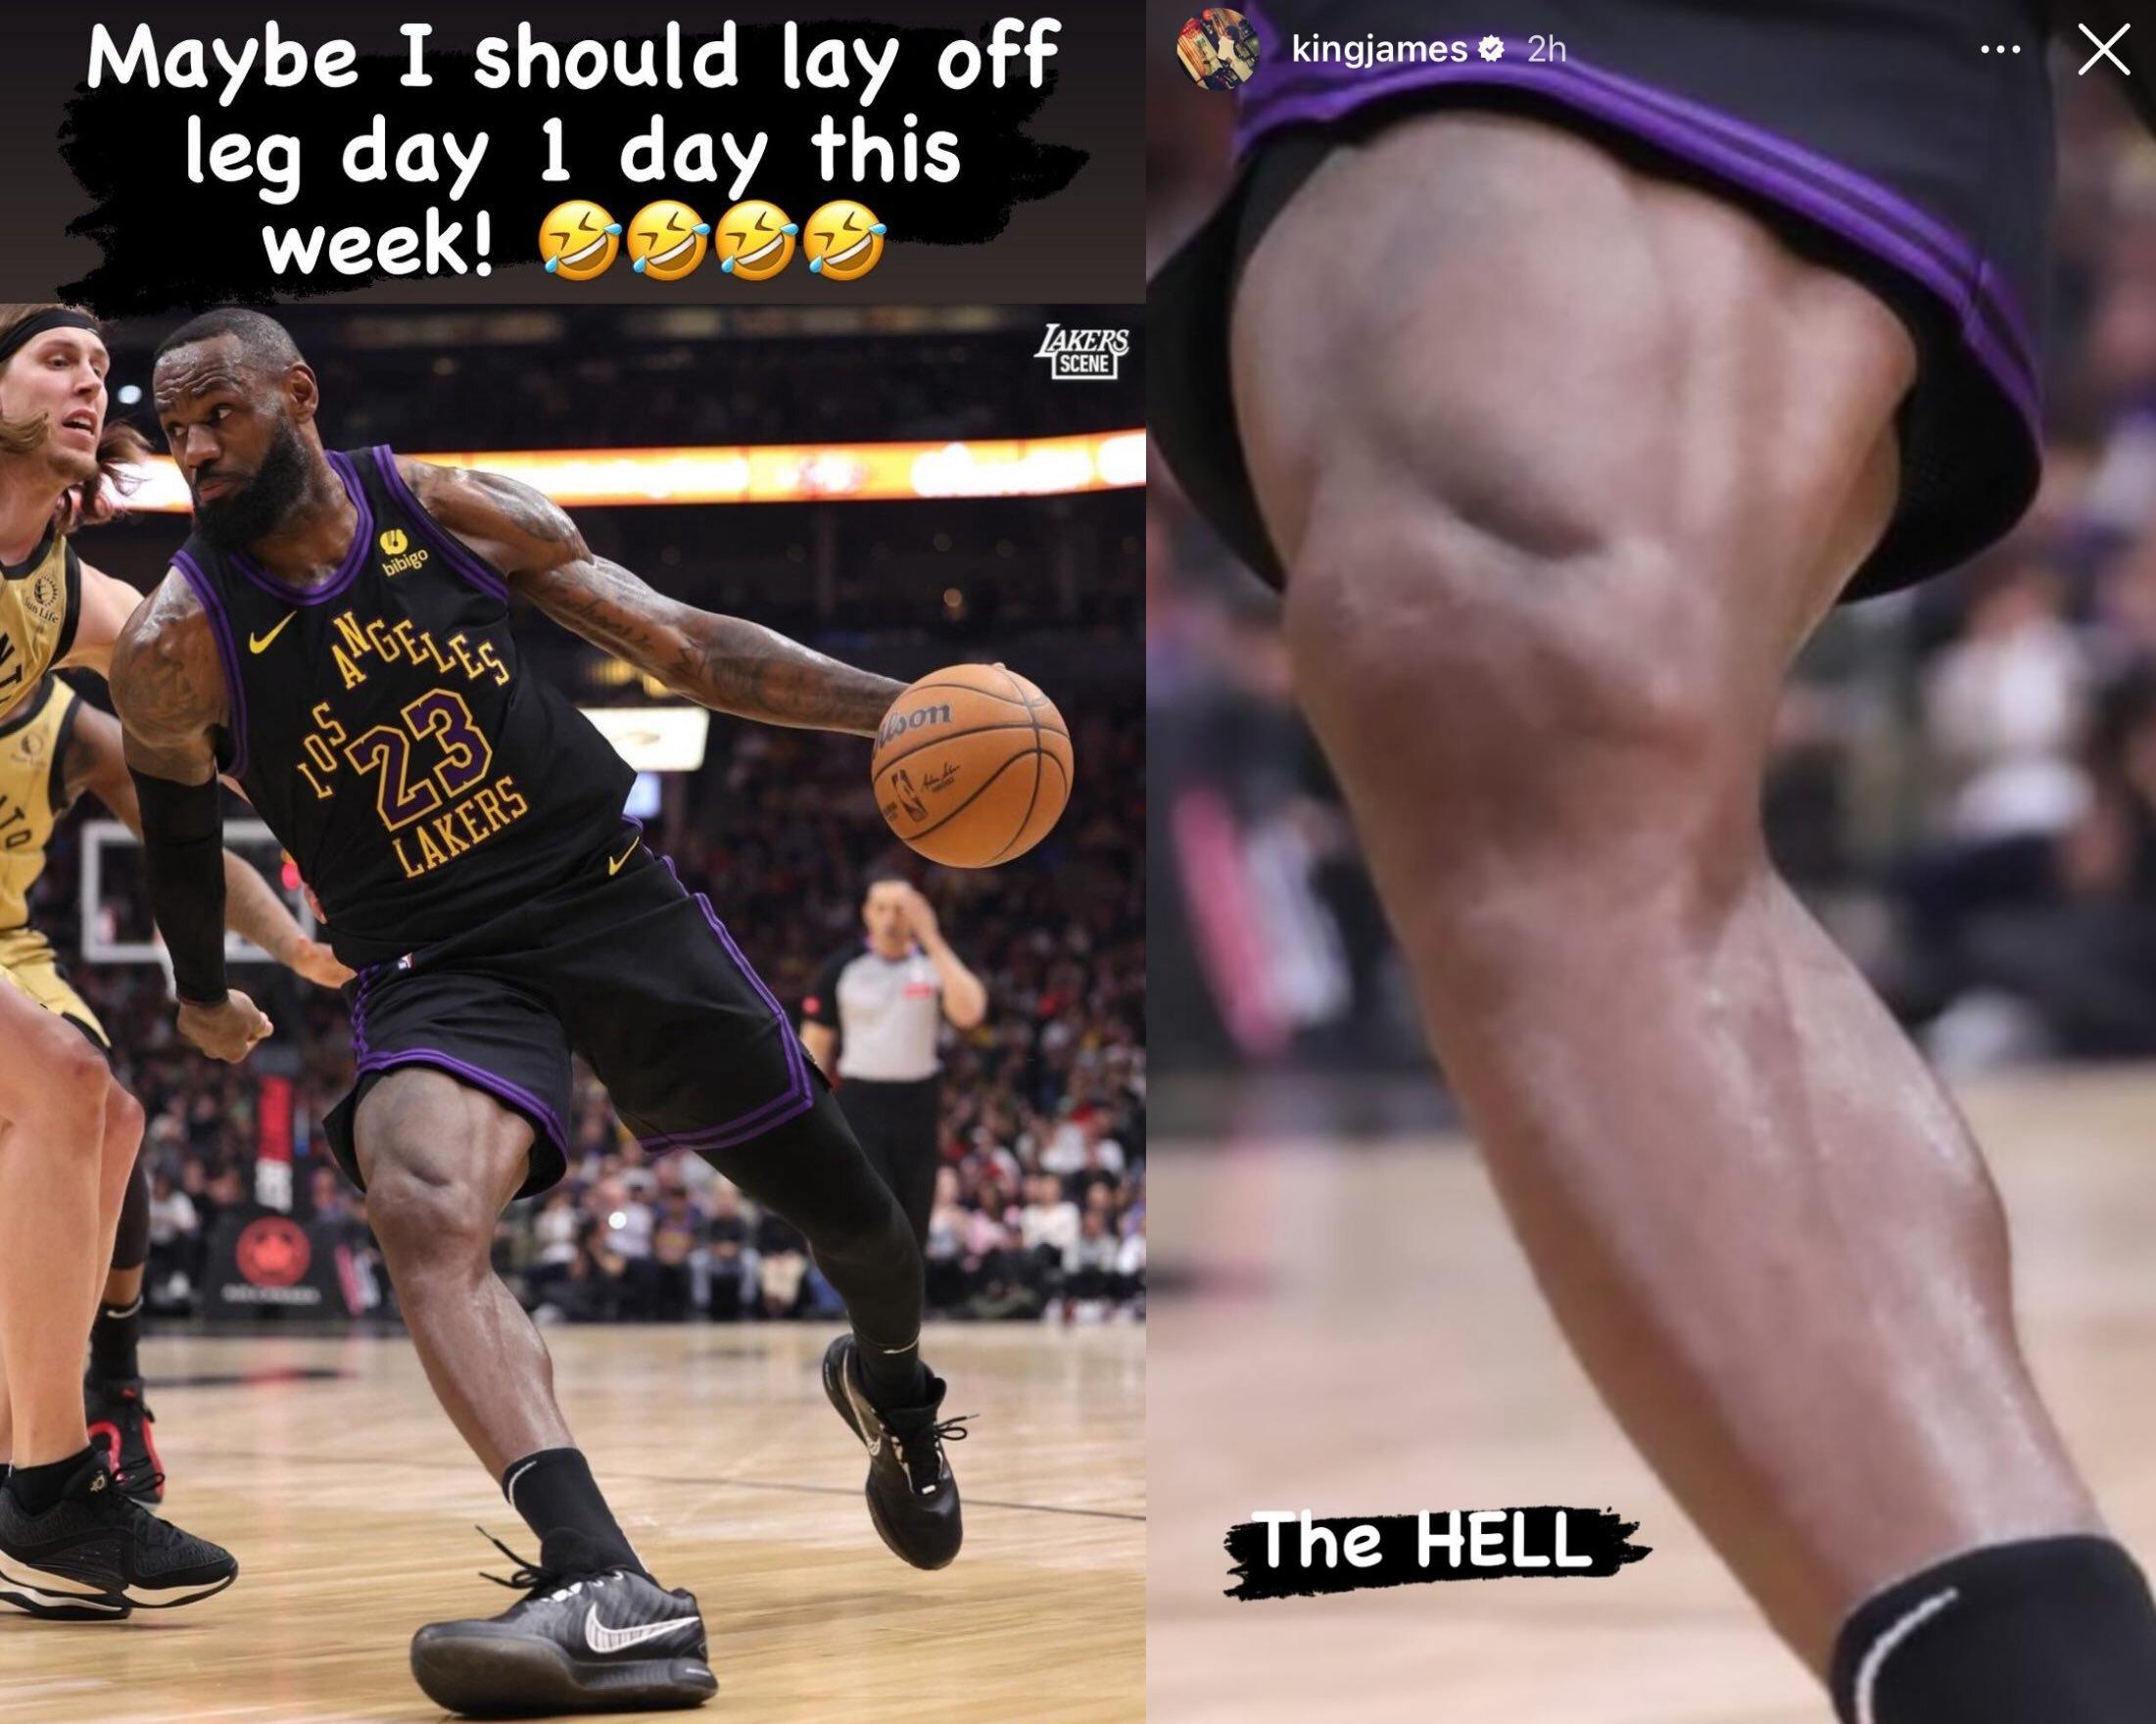 Леброн Джеймс опубликовал фото мышц ноги: «Может быть, мне стоит отказаться от дня ног на этой неделе»